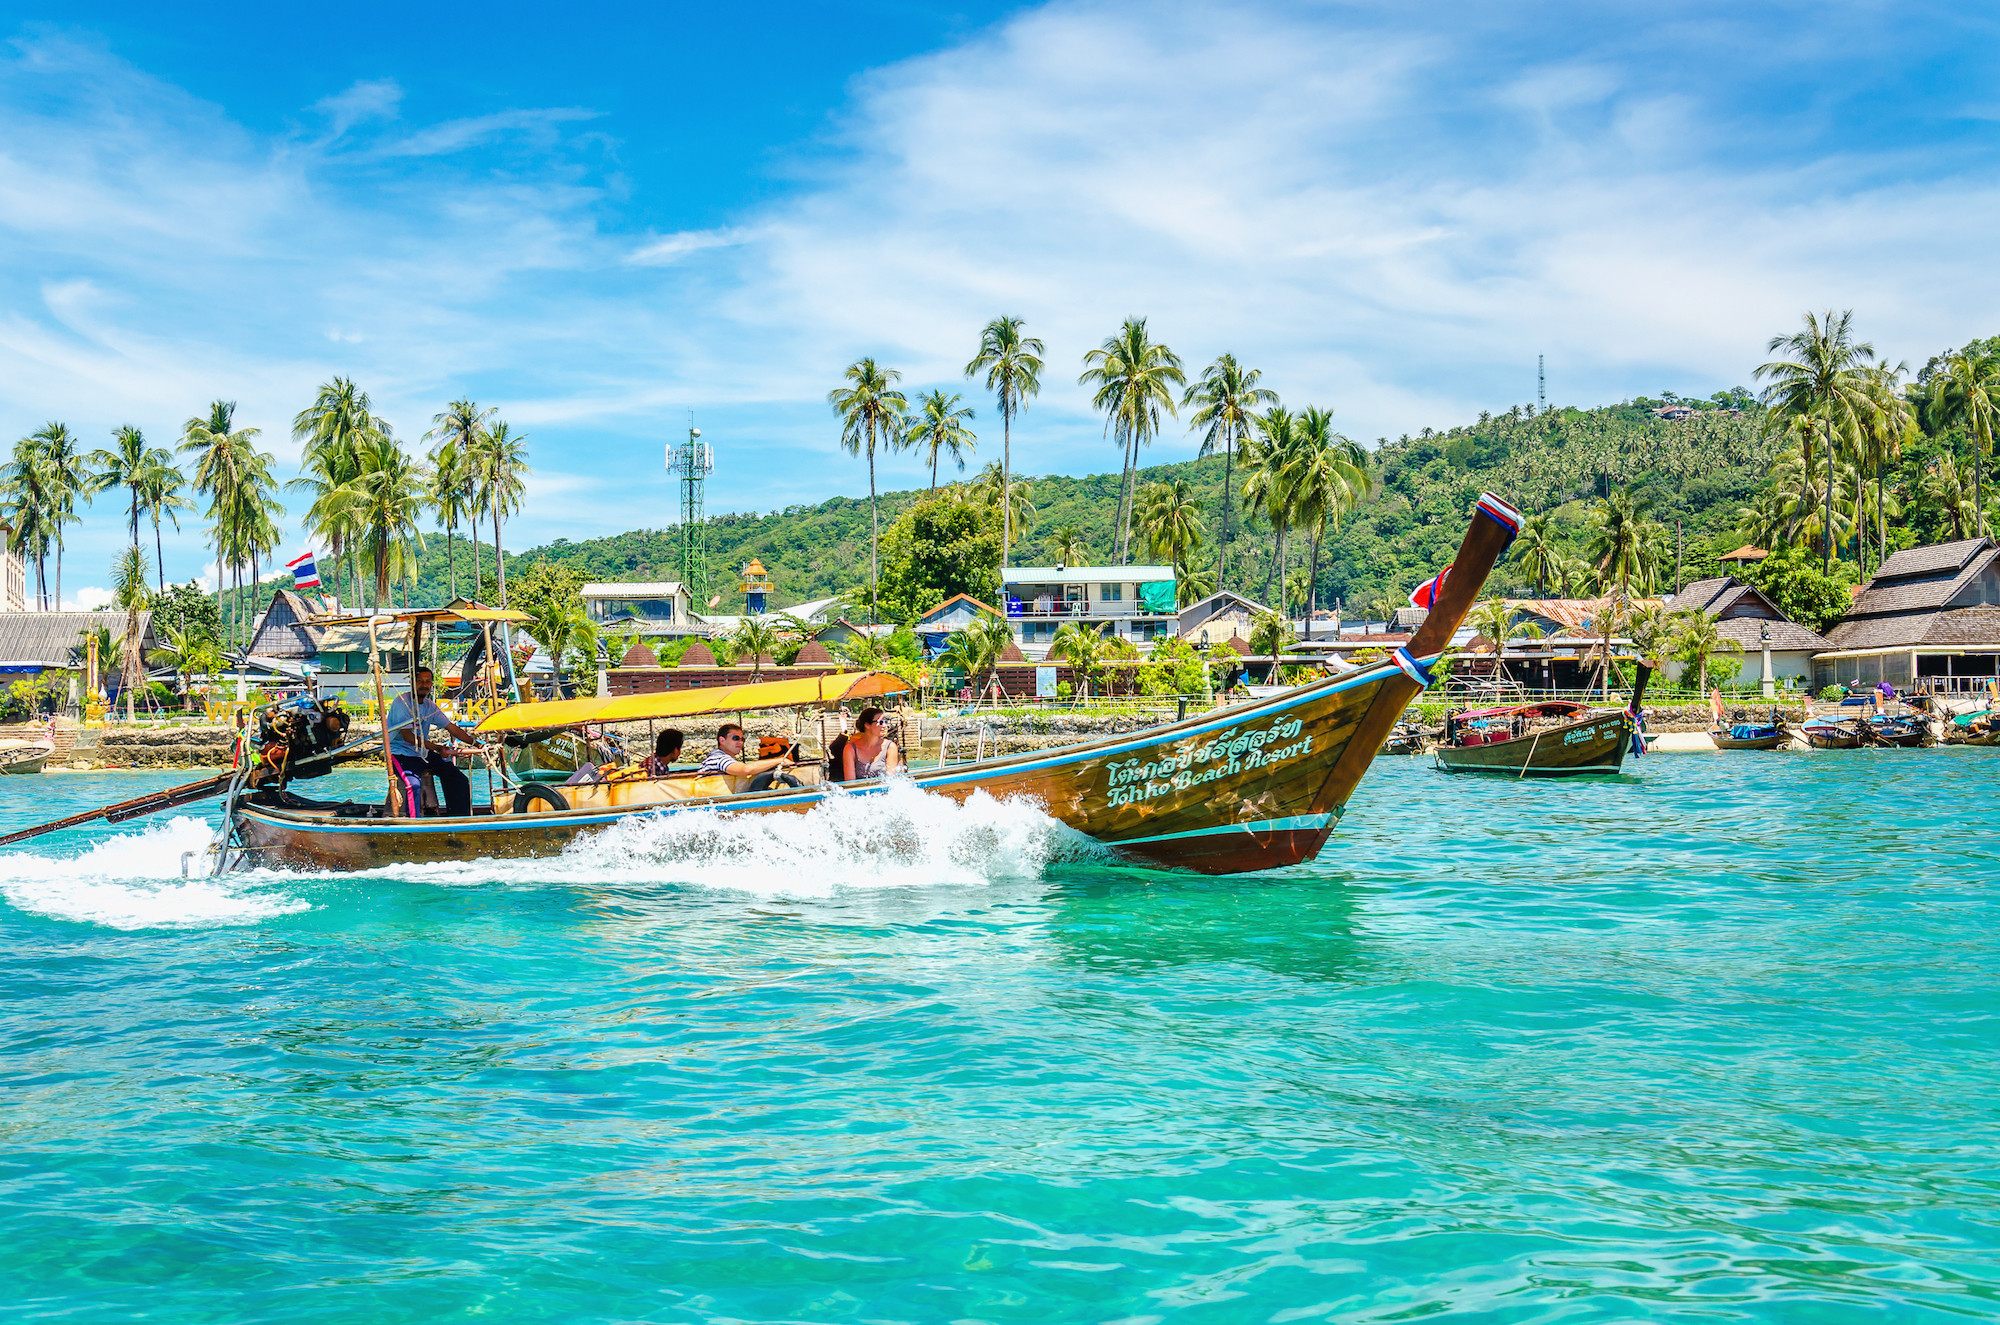 Mùa đẹp nhất để đến với đảo thiên đường Phuket - ảnh 2